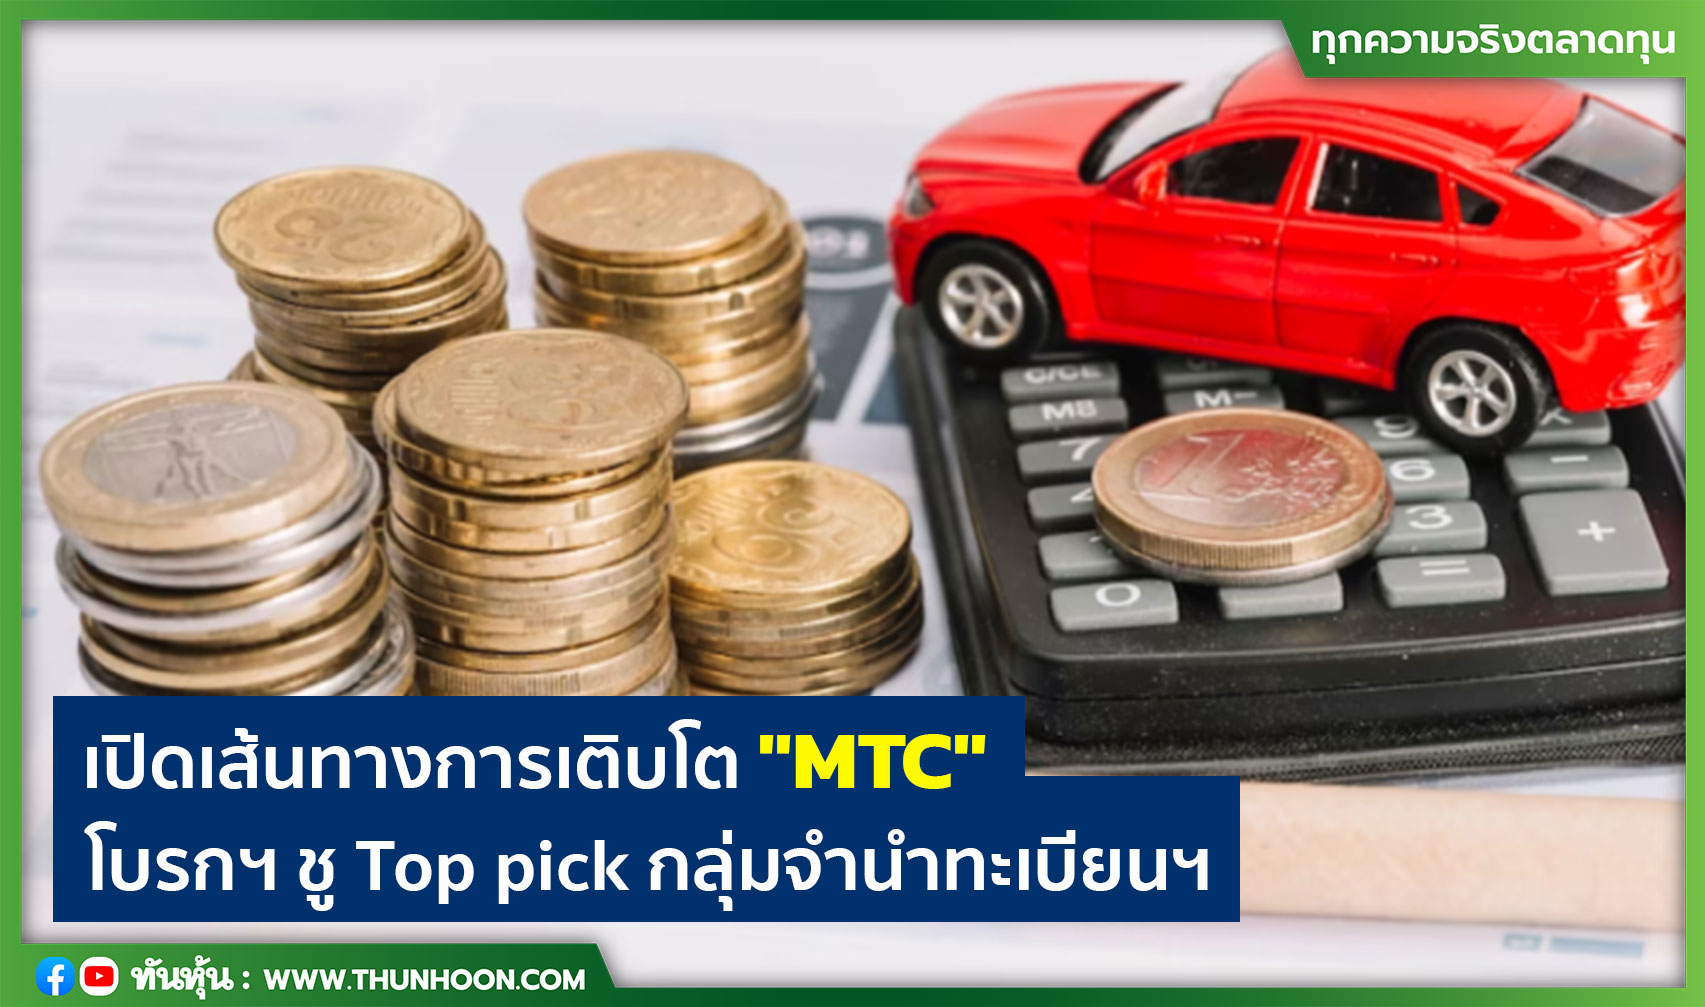 เปิดเส้นทางการเติบโต "MTC" โบรกฯ ชู Top pick กลุ่มจำนำทะเบียนฯ